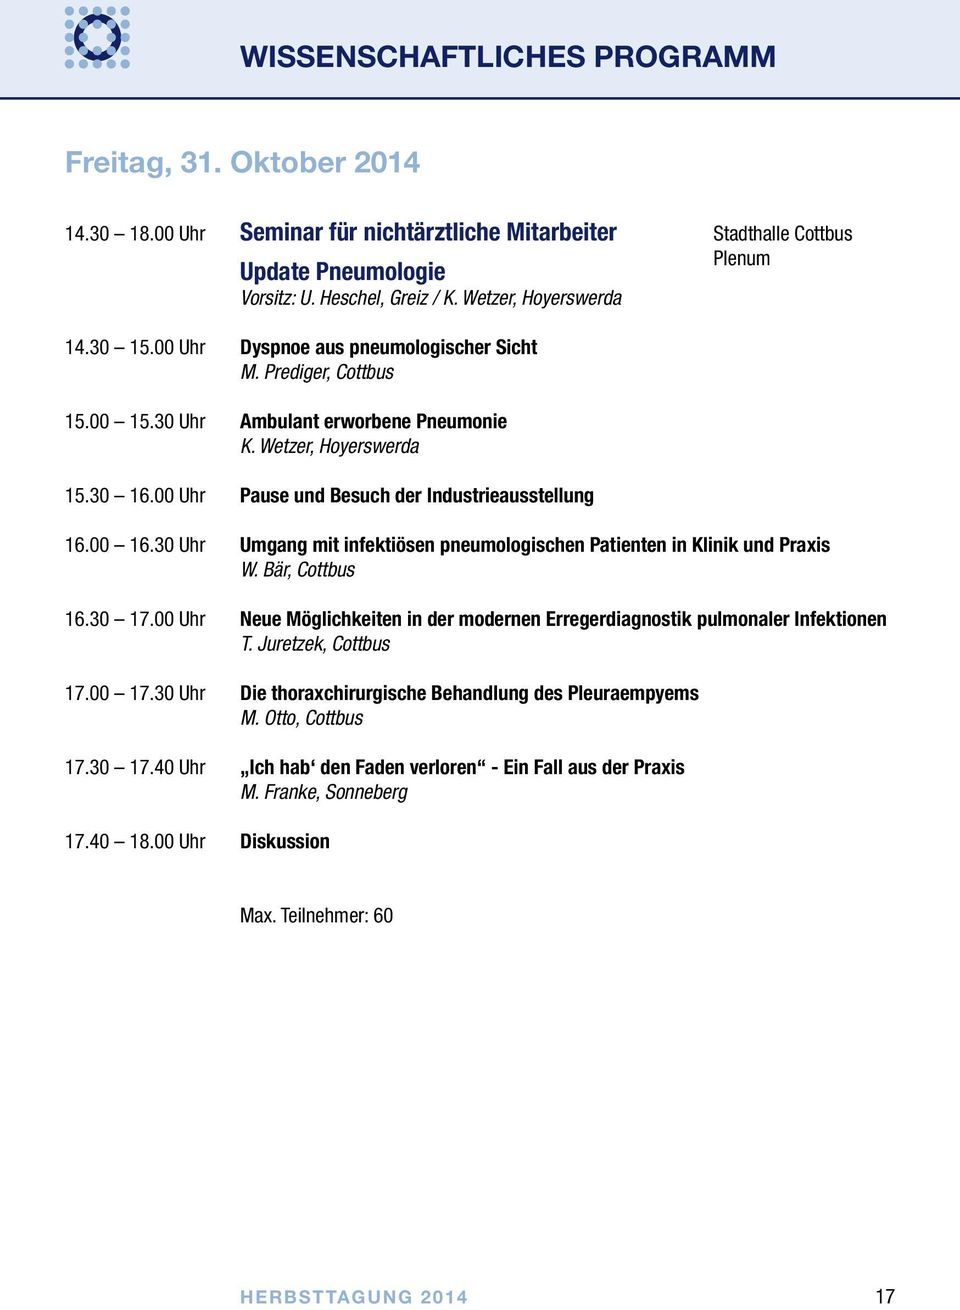 00 Uhr Pause und Besuch der Industrieausstellung 16.00 16.30 Uhr Umgang mit infektiösen pneumologischen Patienten in Klinik und Praxis W. Bär, Cottbus 16.30 17.